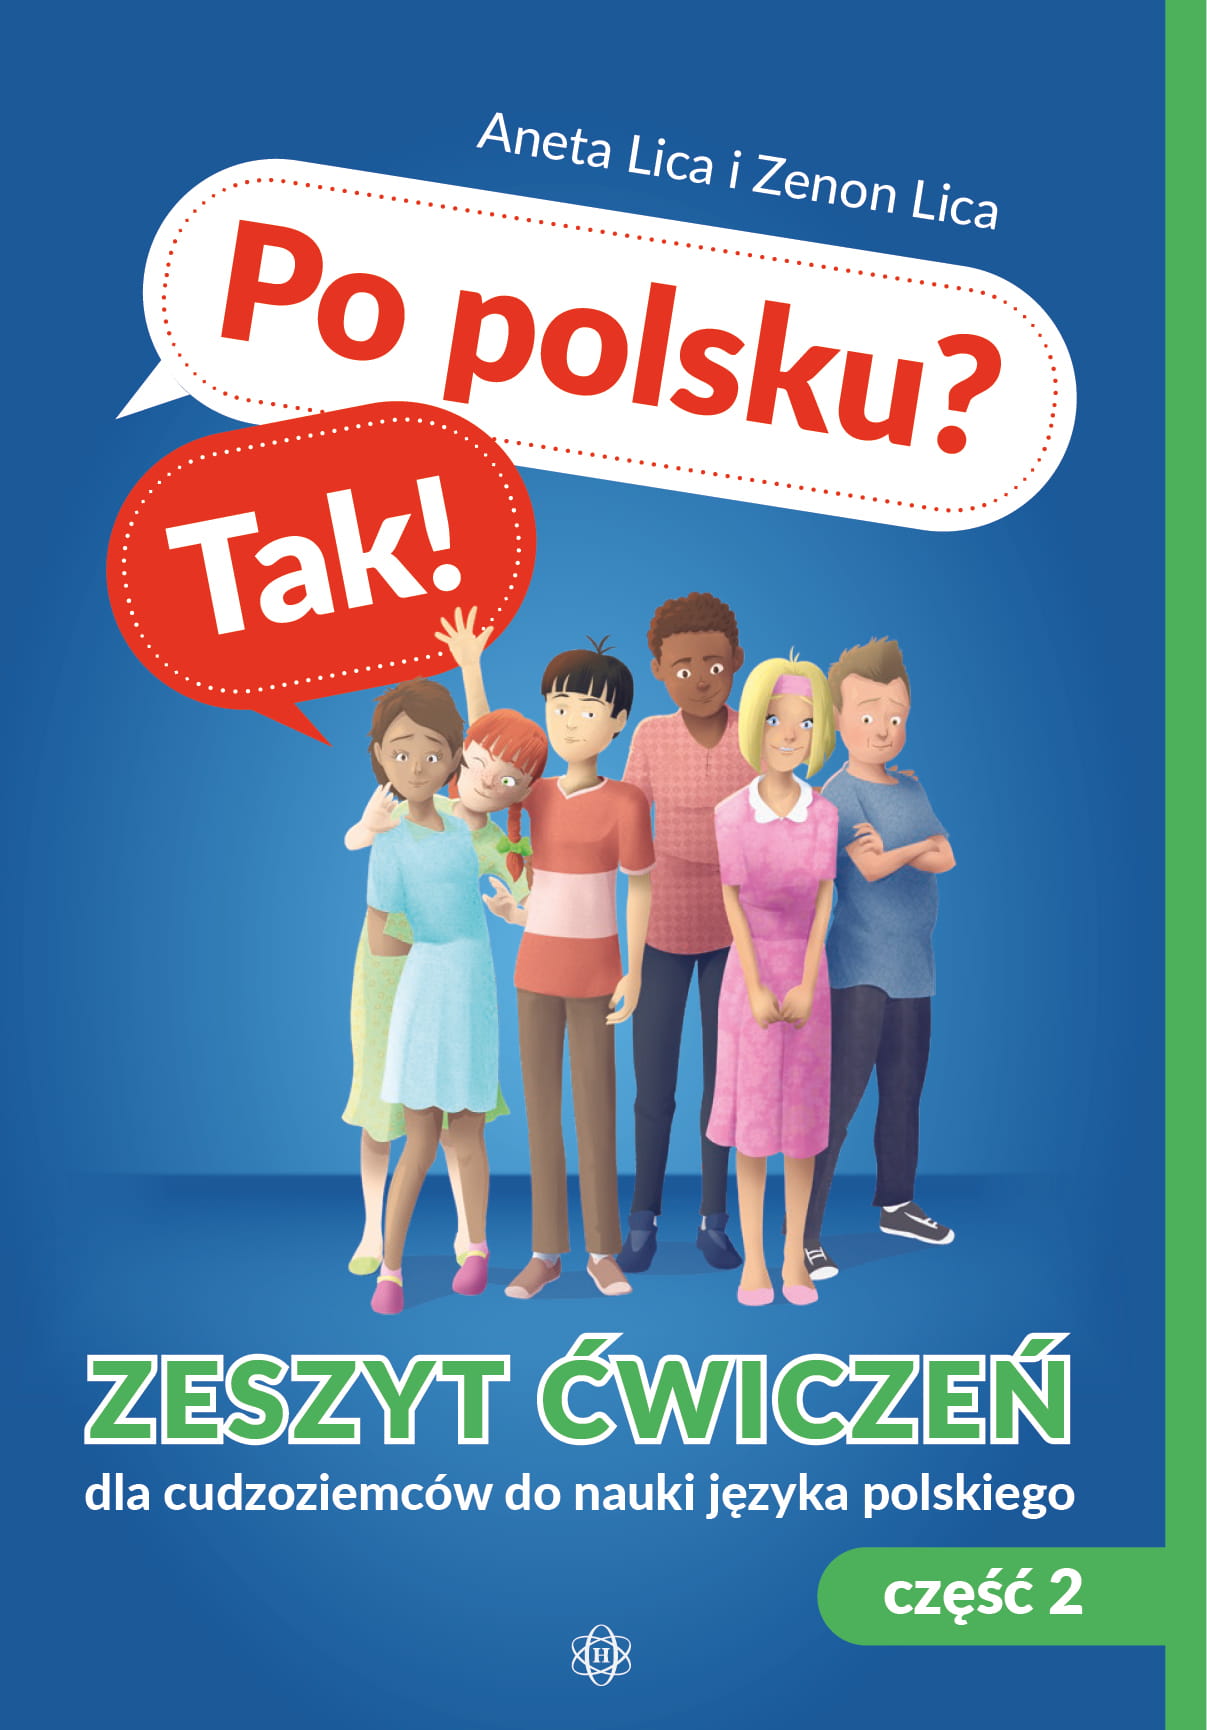 Po polsku? Tak! Zeszyt ćwiczeń dla cudzoziemców do nauki języka polskiego. Część 2